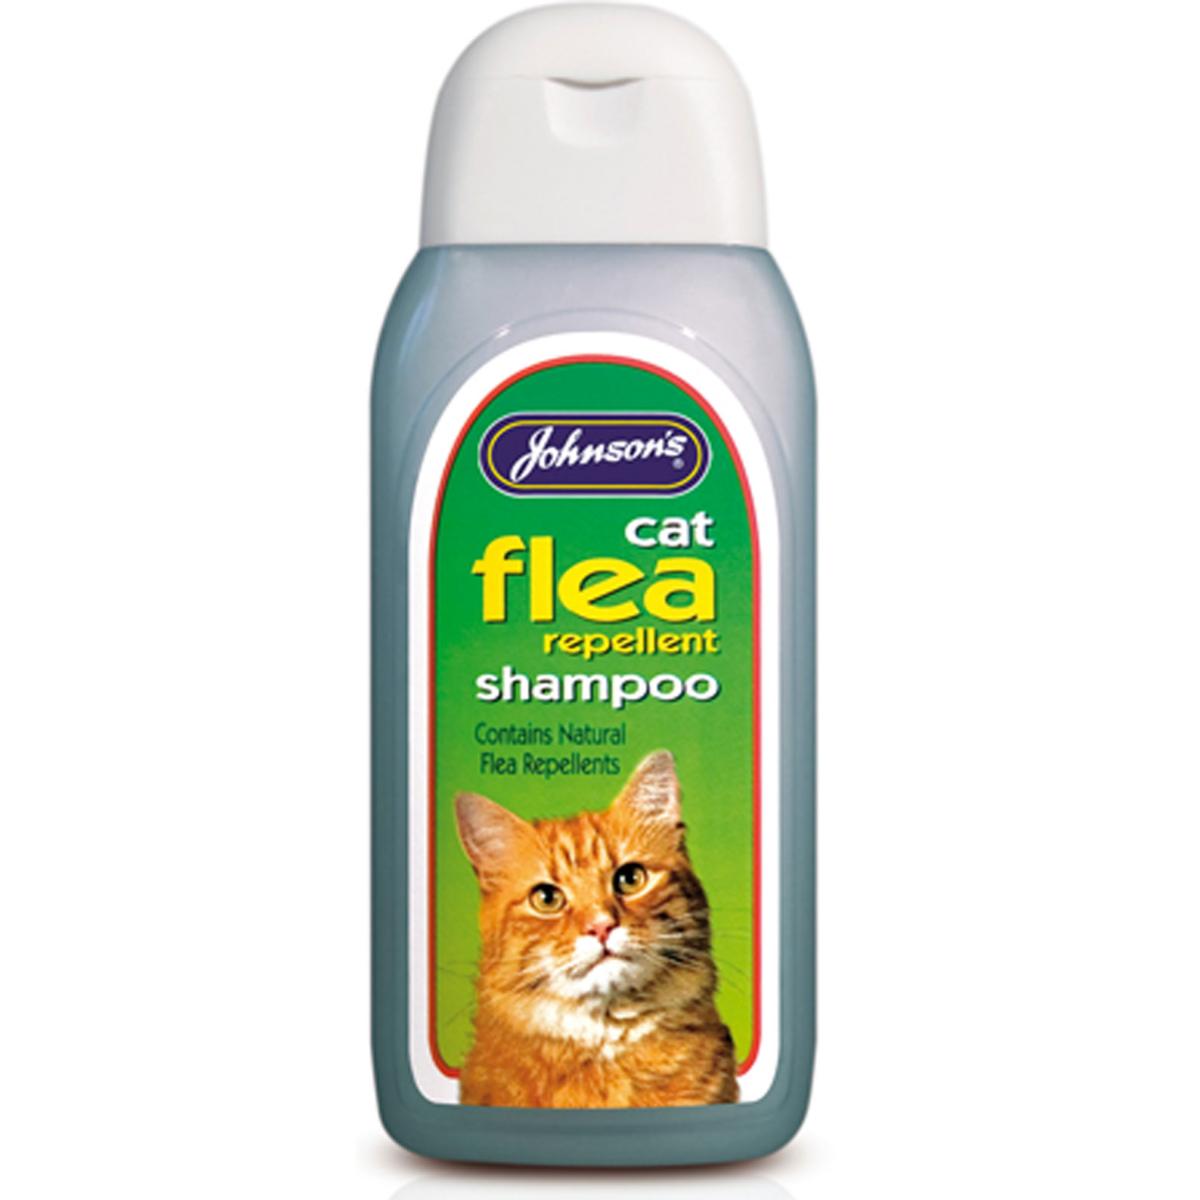 Espree Flea & Tick Cat Shampoo From Petco in Austin, TX